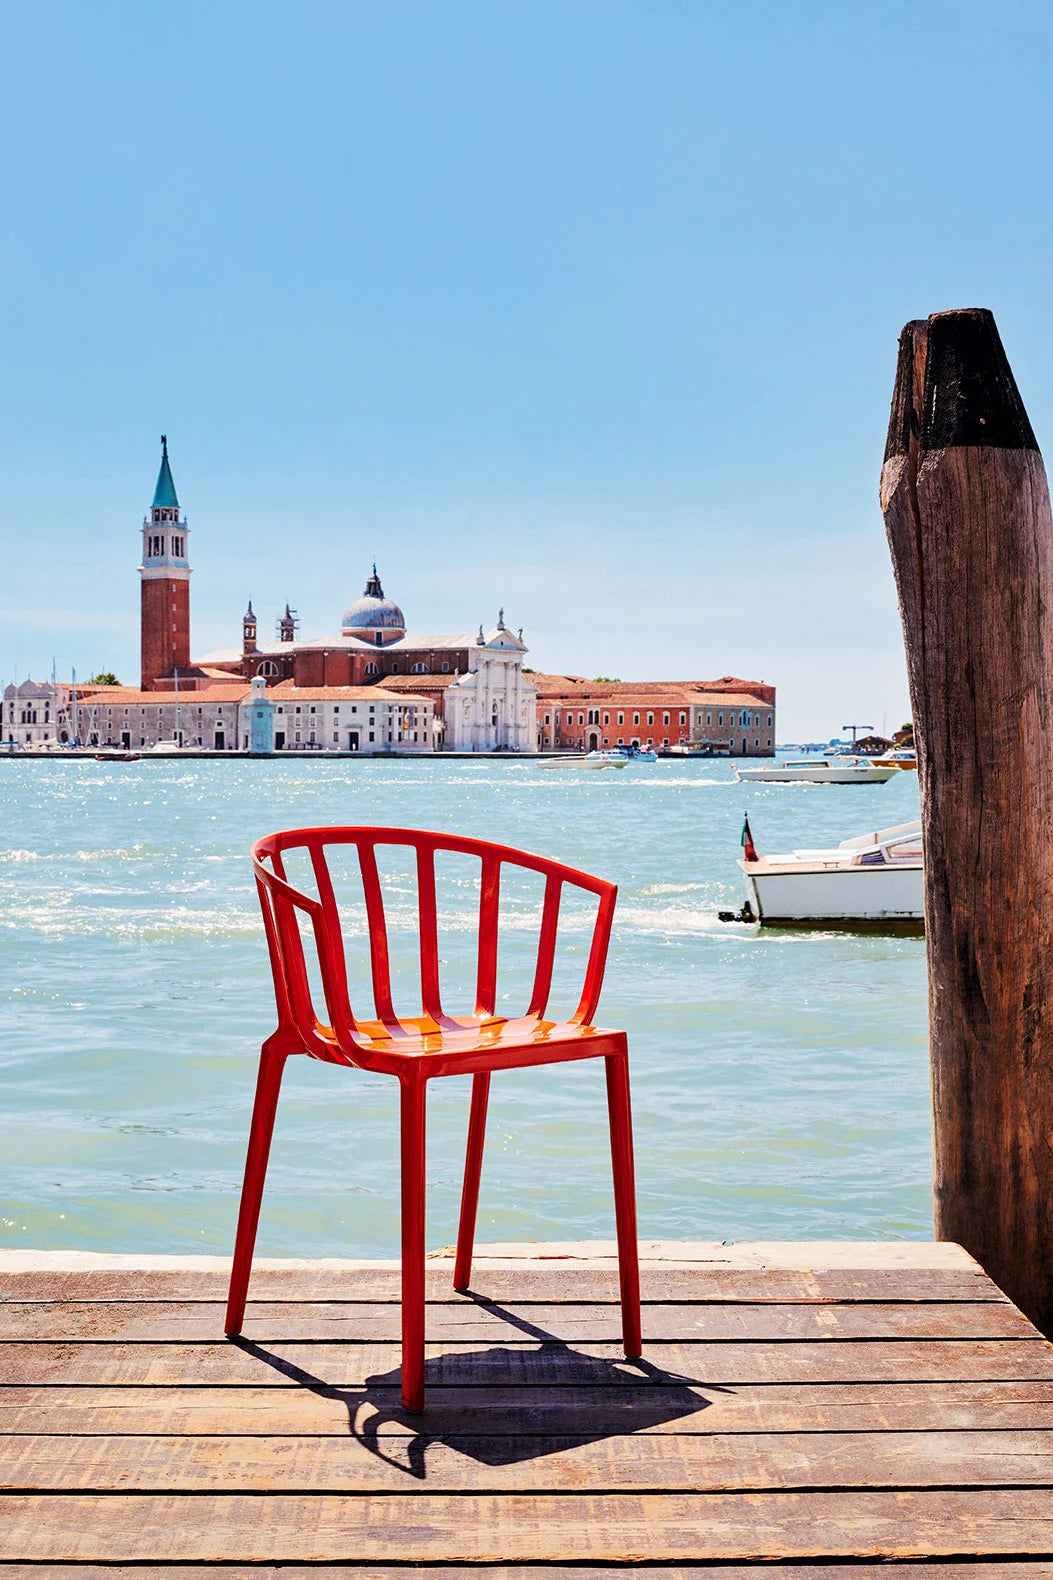 Krzesło Kartell Venice, szałwia zielona